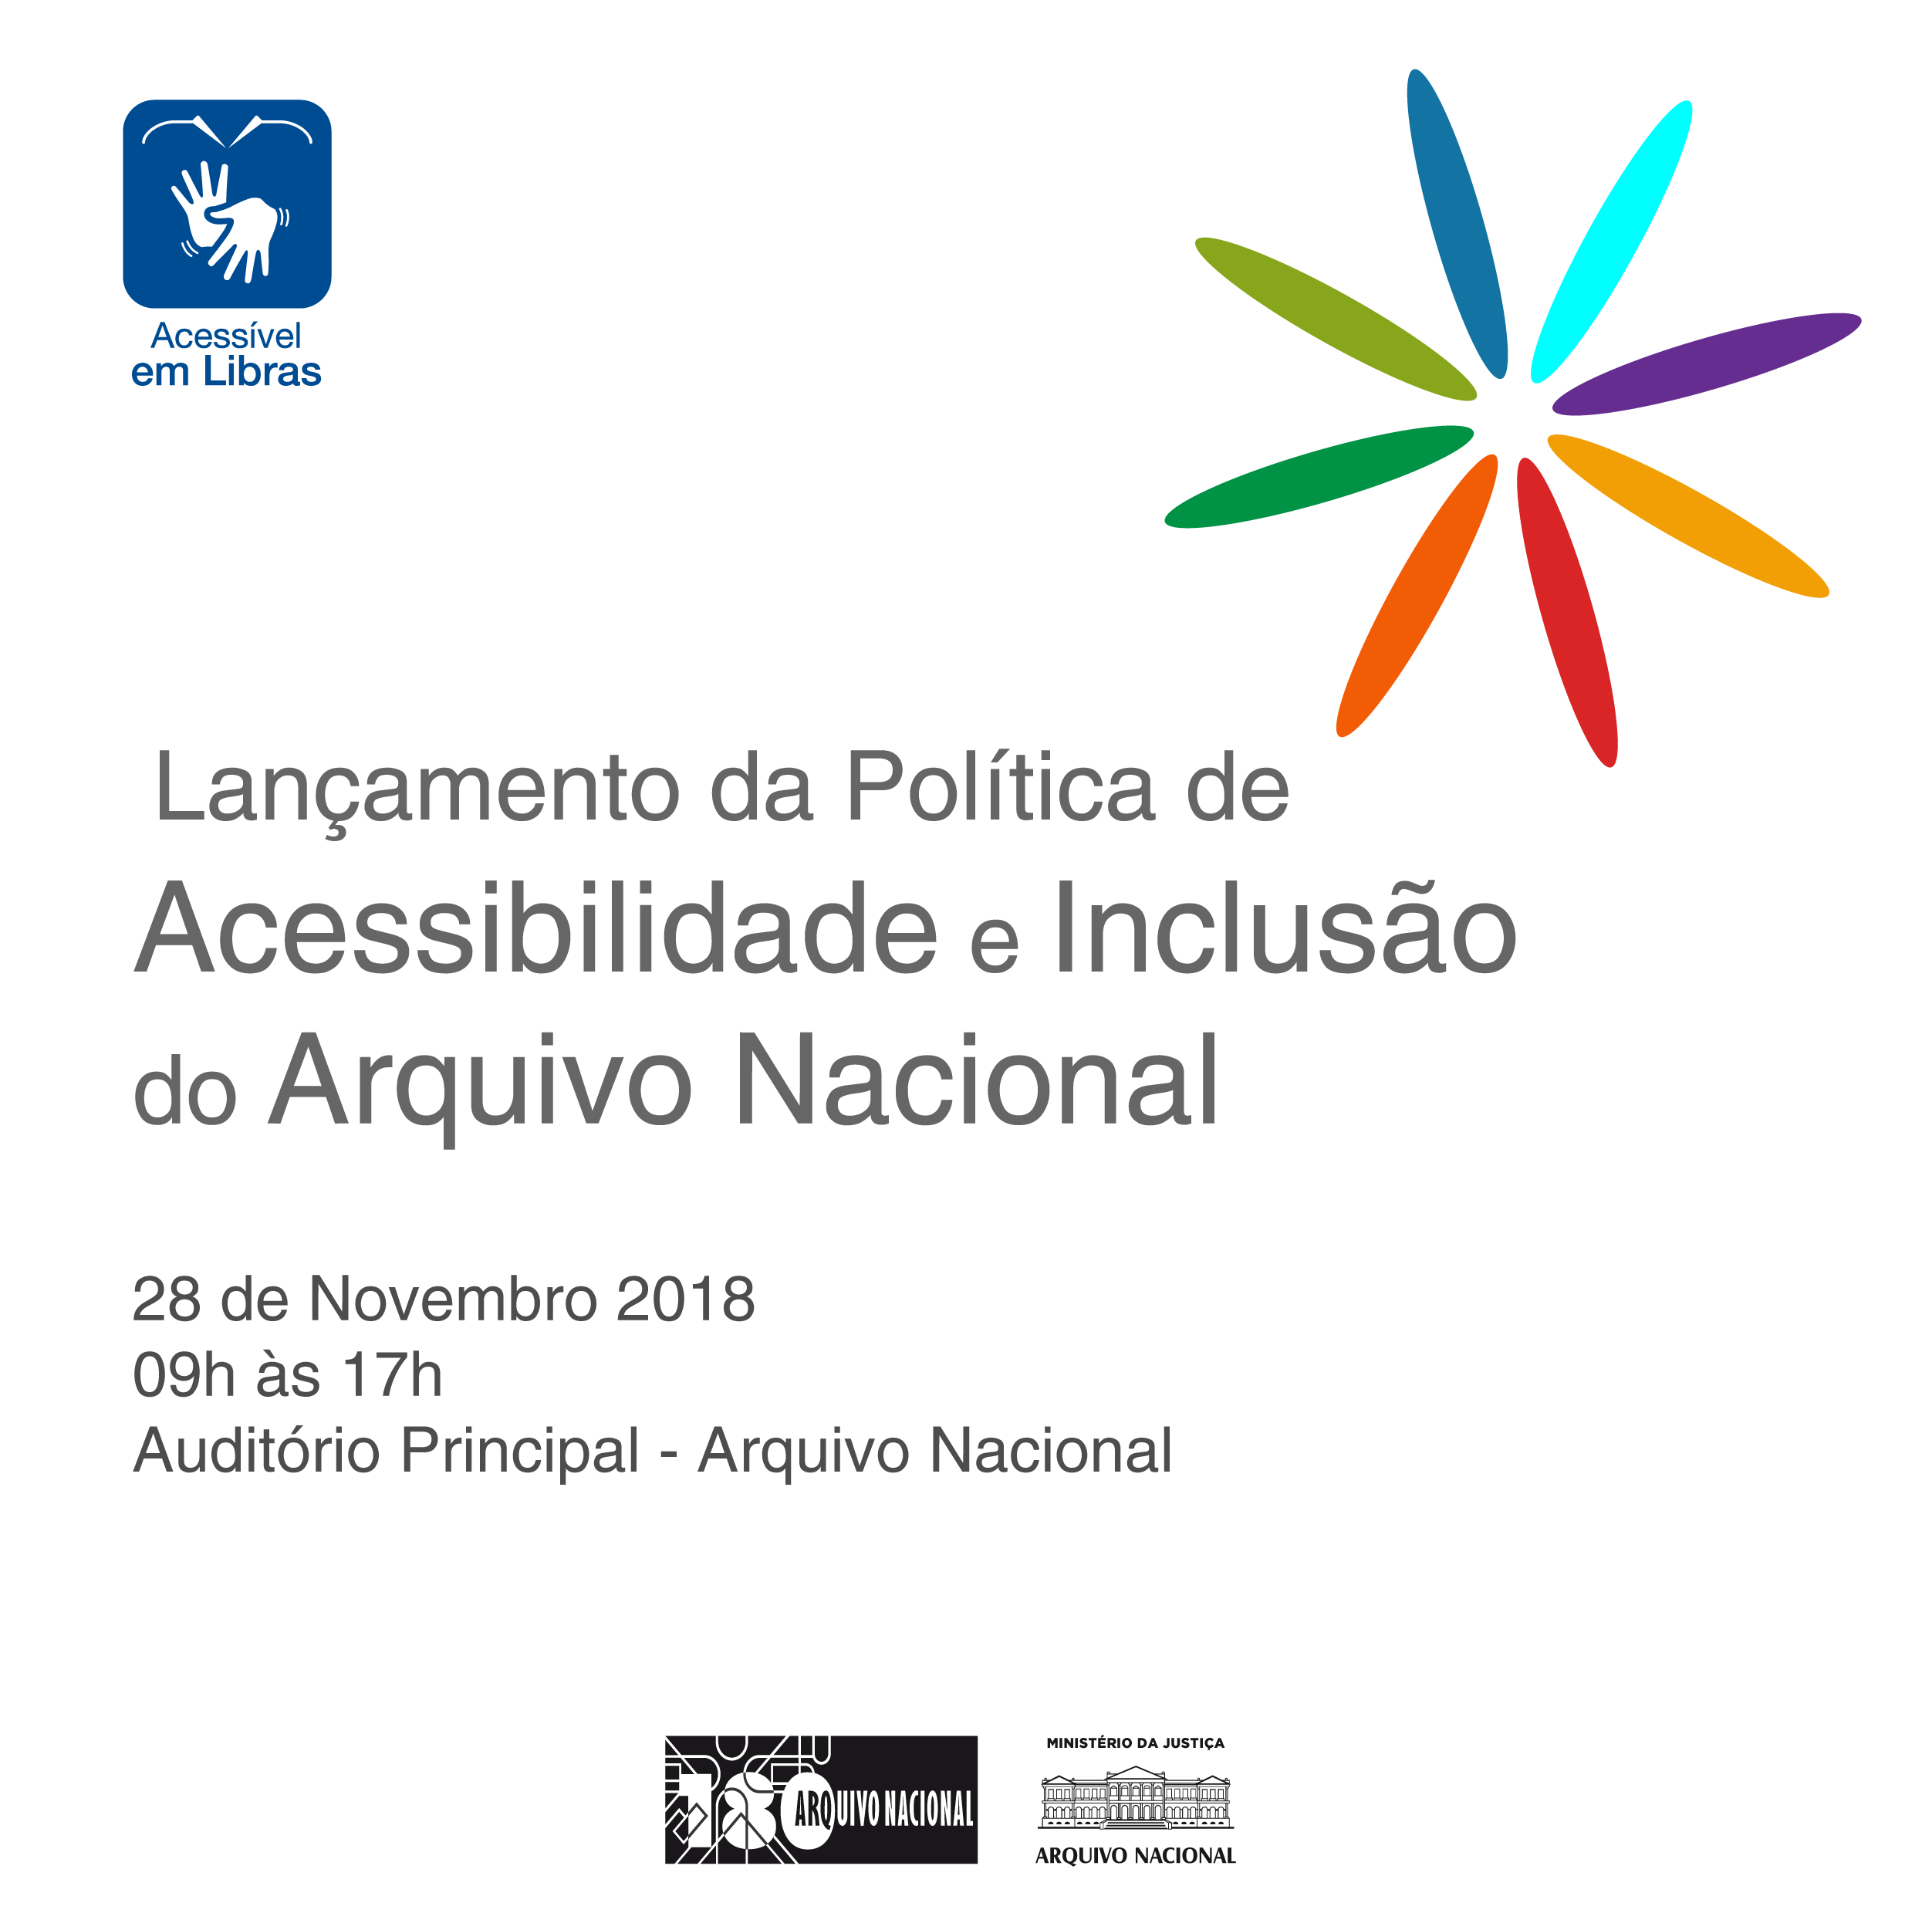 acessibilidade-2018_postquadrado.png